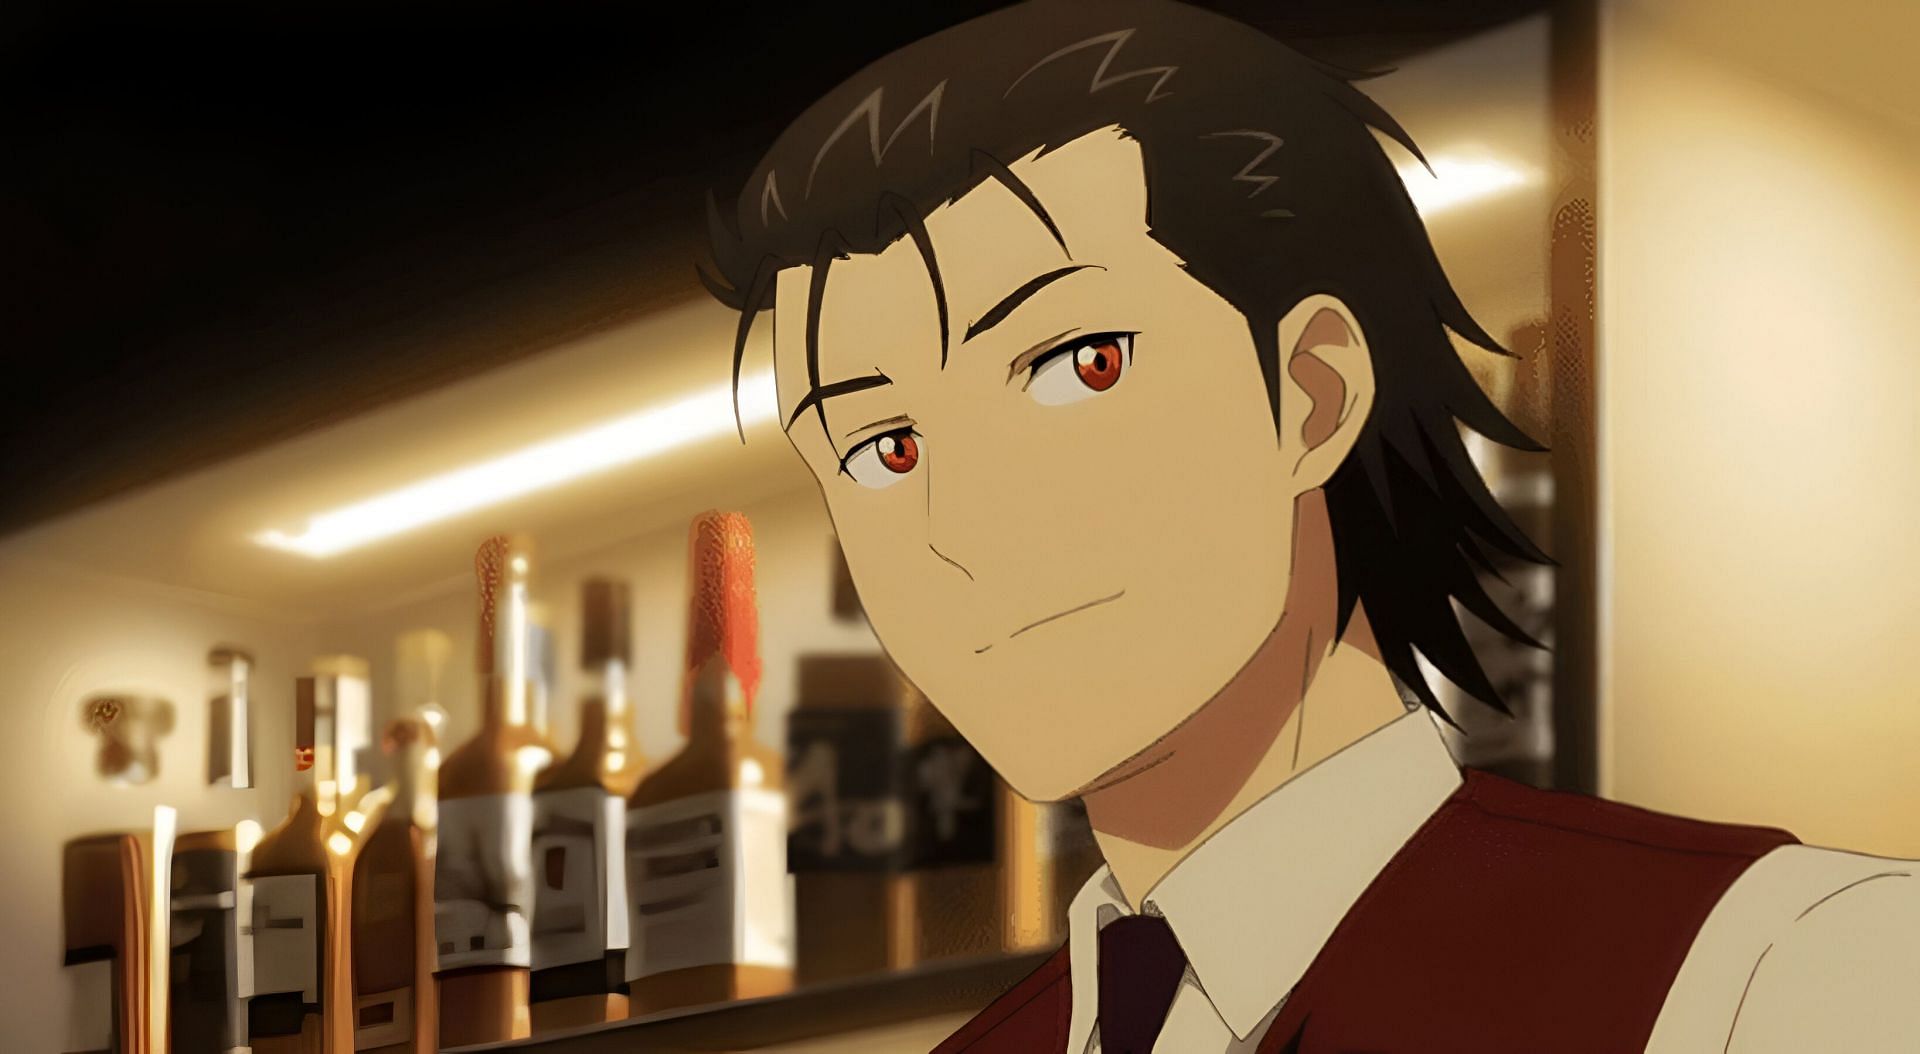 Sasakura as seen in the anime (Image via Liber)